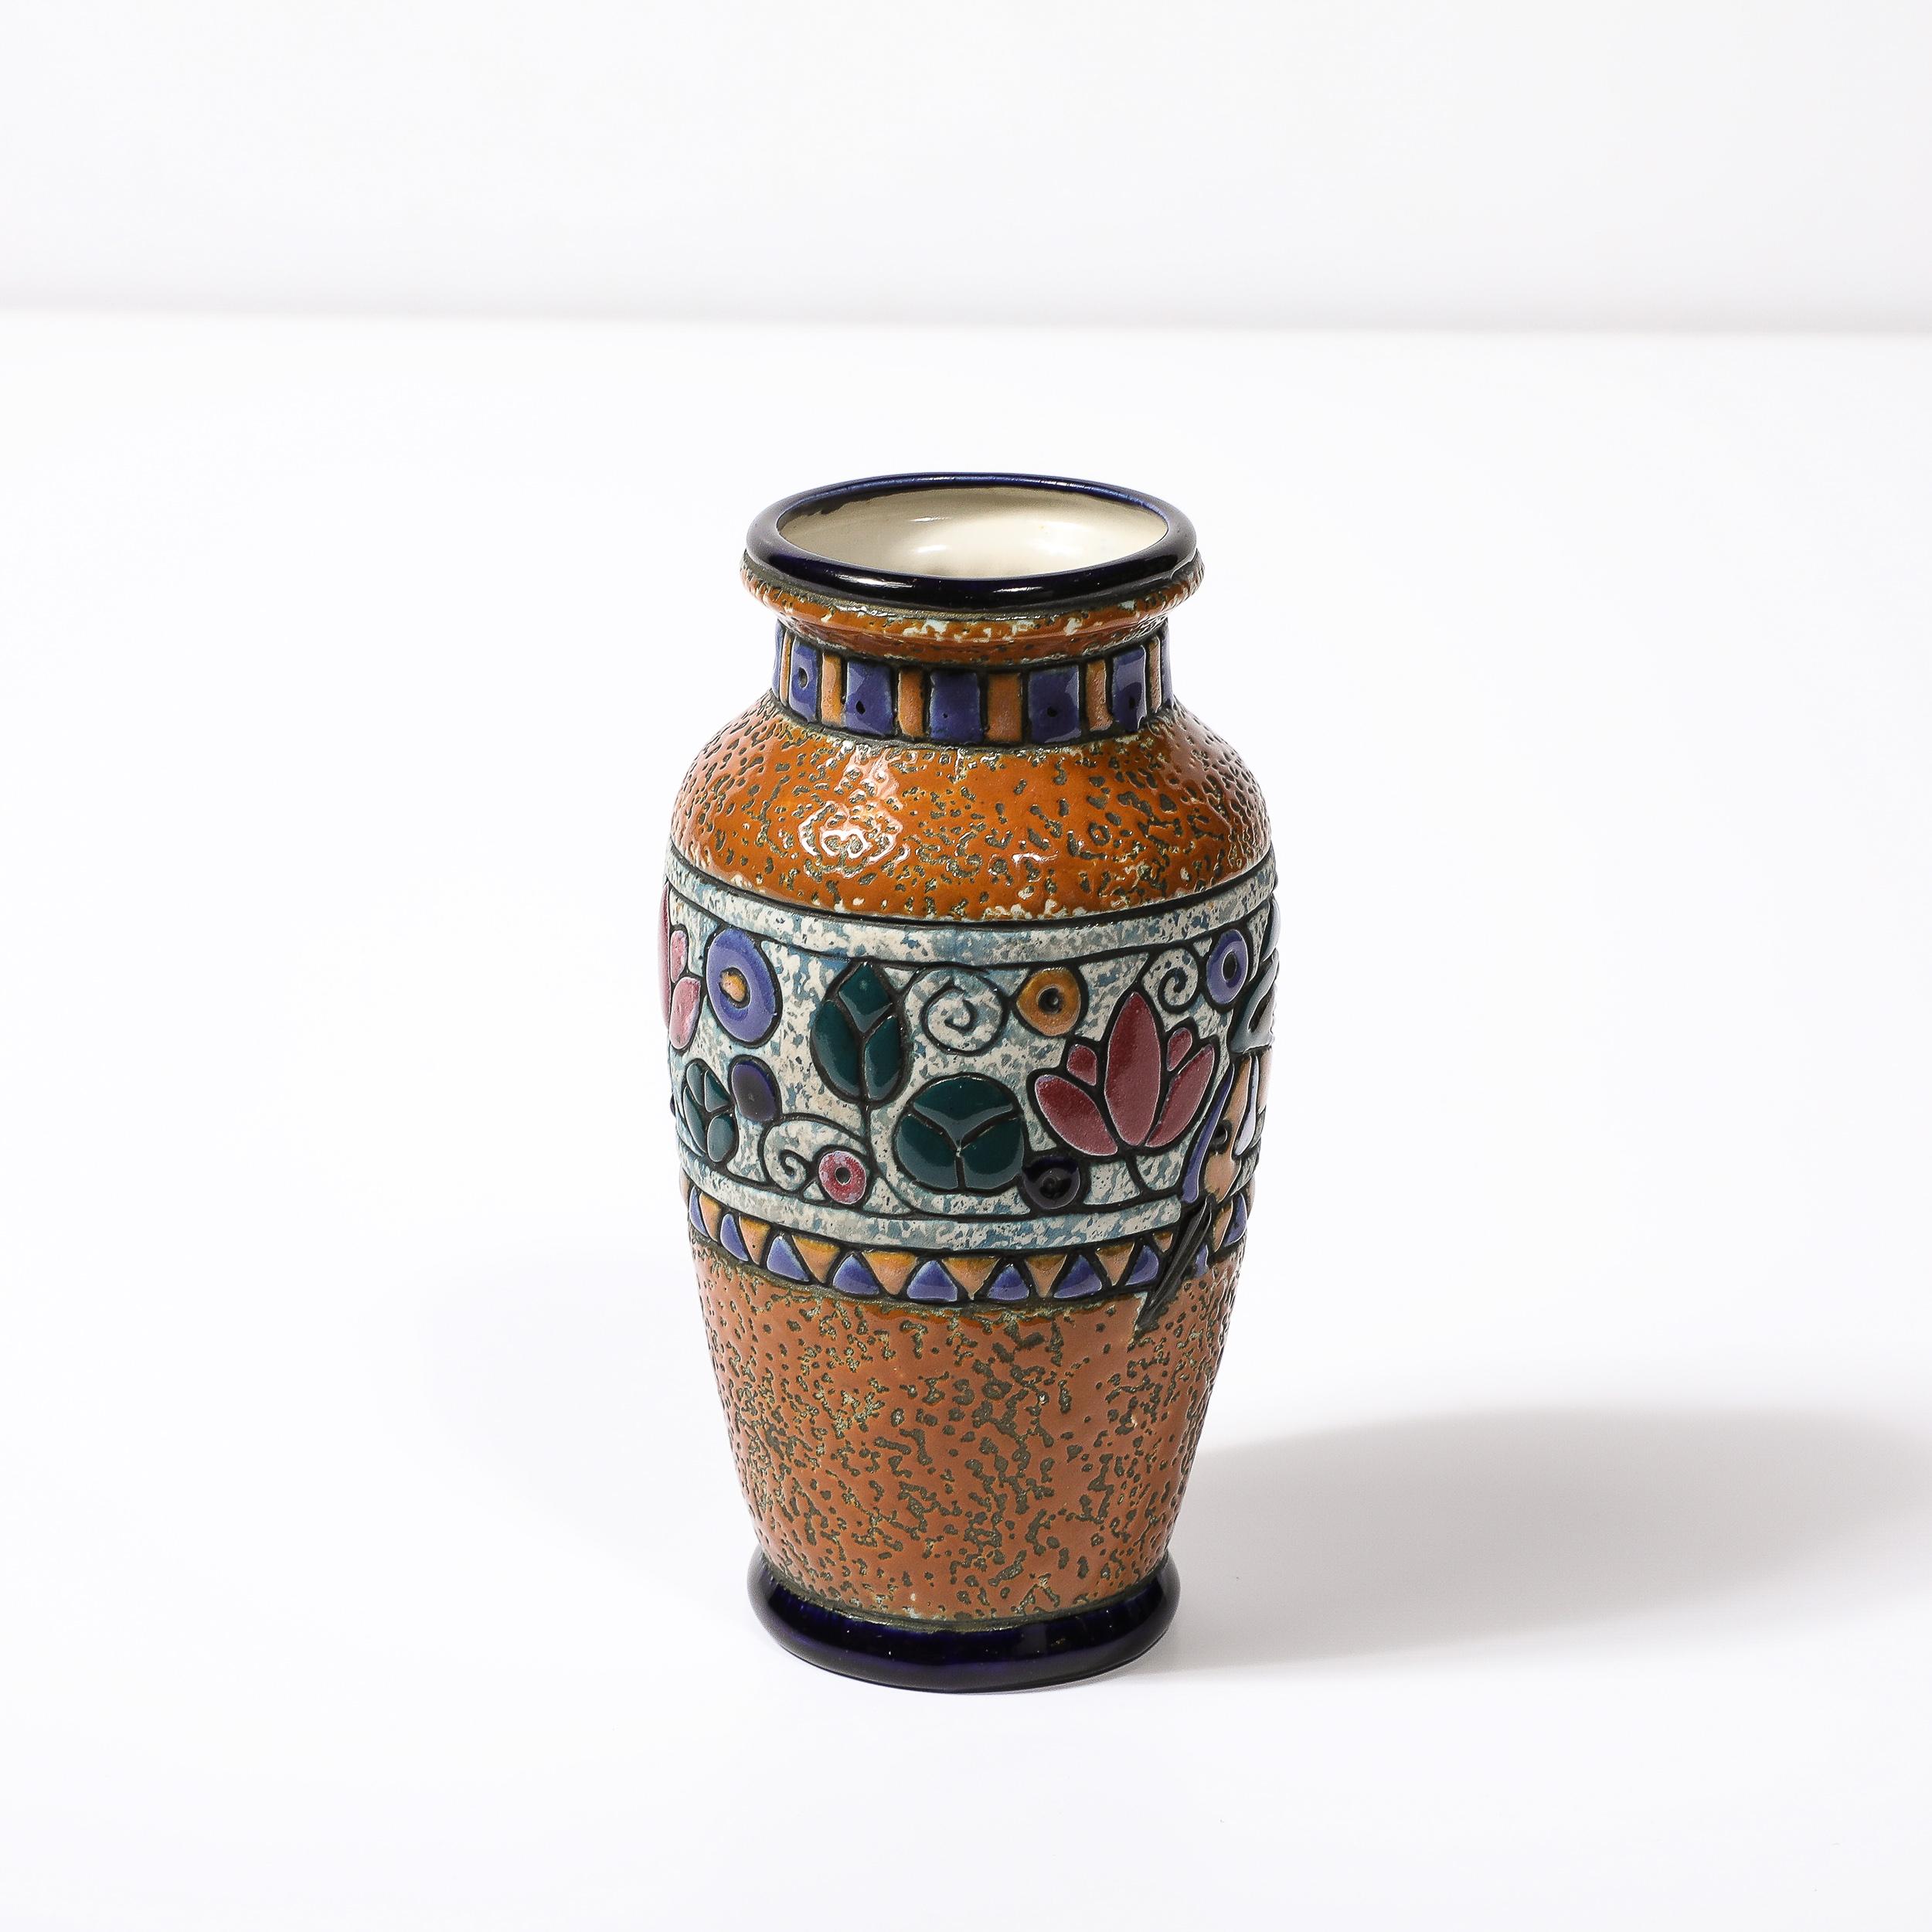 Este sofisticado jarrón de cerámica cubista Art Decó con colibrí y vidriado lineal multicolor está firmado Amphora y procede de Checoslovaquia, circa 1930. Presenta un precioso tono organe en un acabado cerámico de textura lograda, con una forma